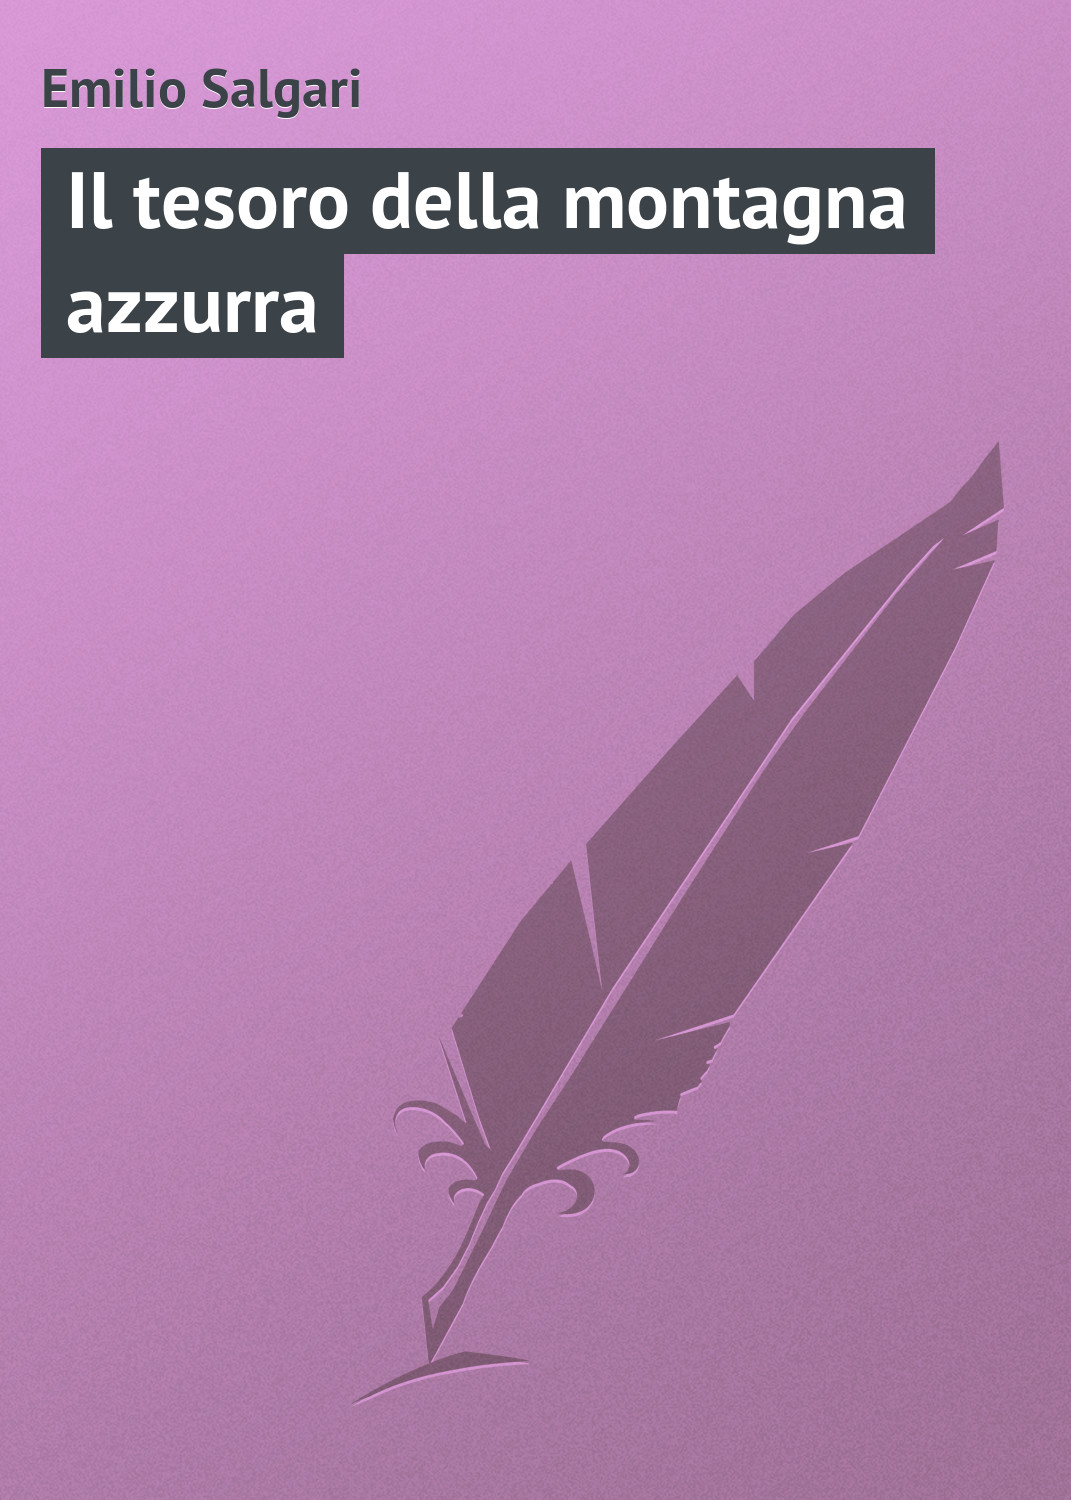 Книга Il tesoro della montagna azzurra из серии , созданная Emilio Salgari, может относится к жанру Зарубежная старинная литература, Зарубежная классика. Стоимость электронной книги Il tesoro della montagna azzurra с идентификатором 21104086 составляет 5.99 руб.